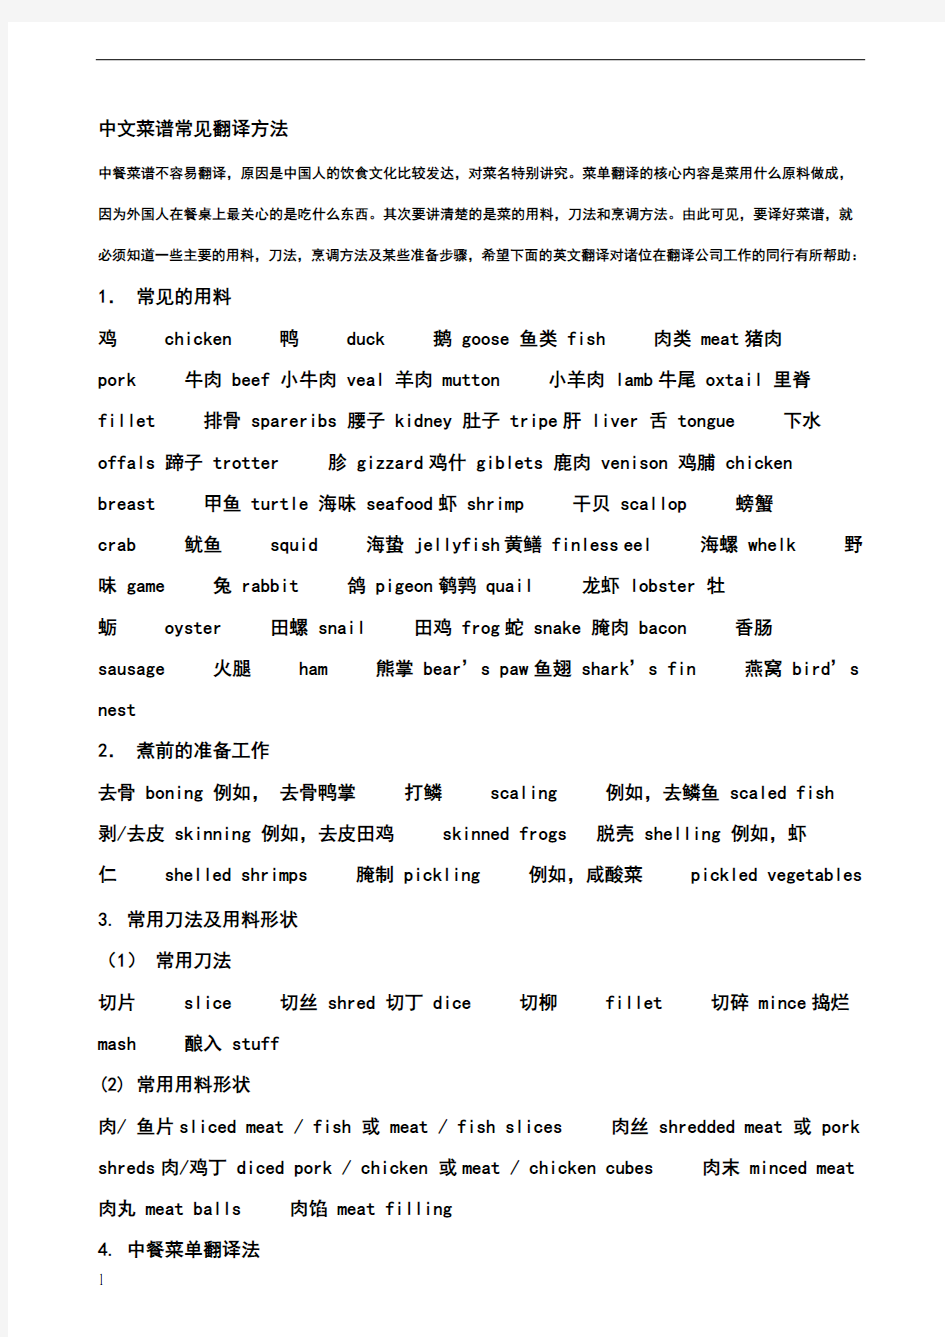 中文菜谱常见翻译方法